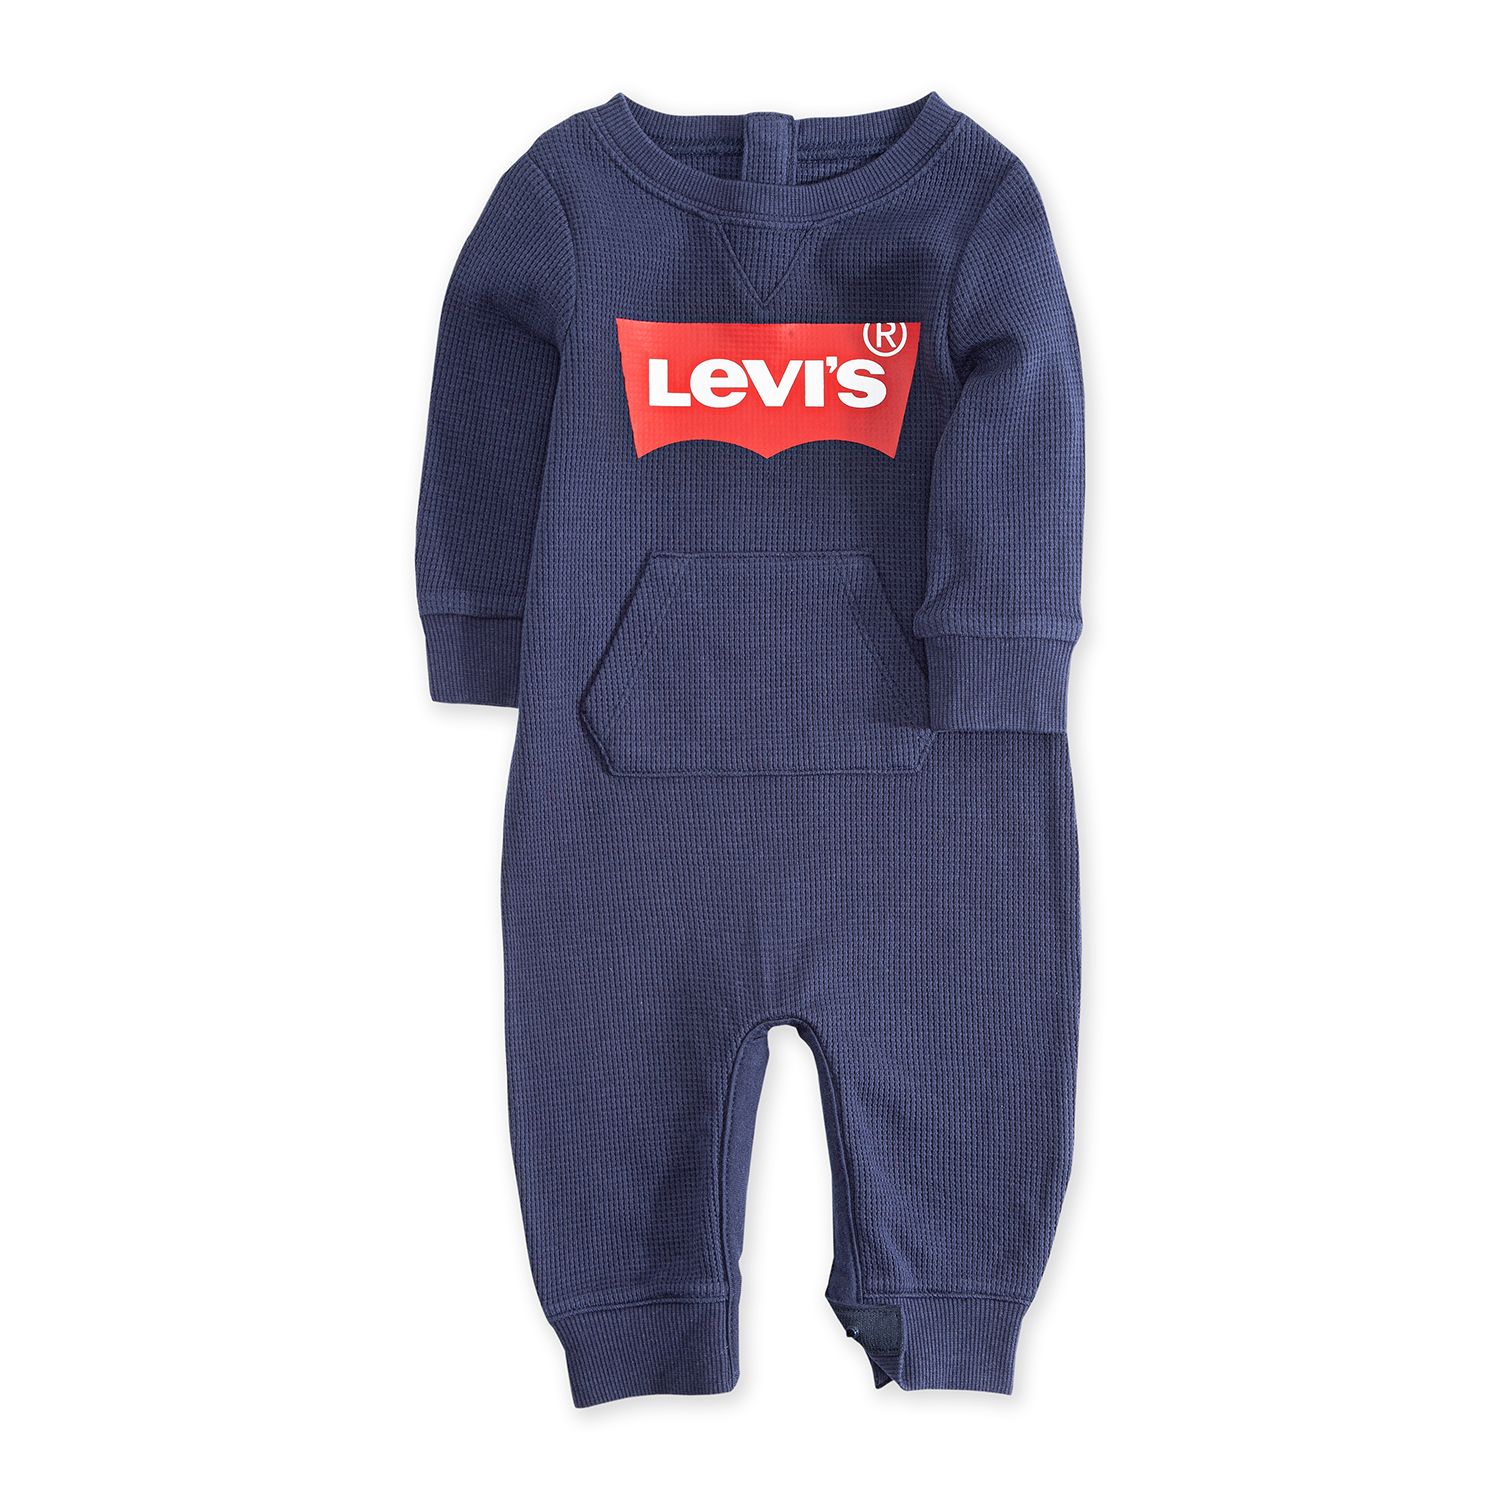 levi's baby boy overalls